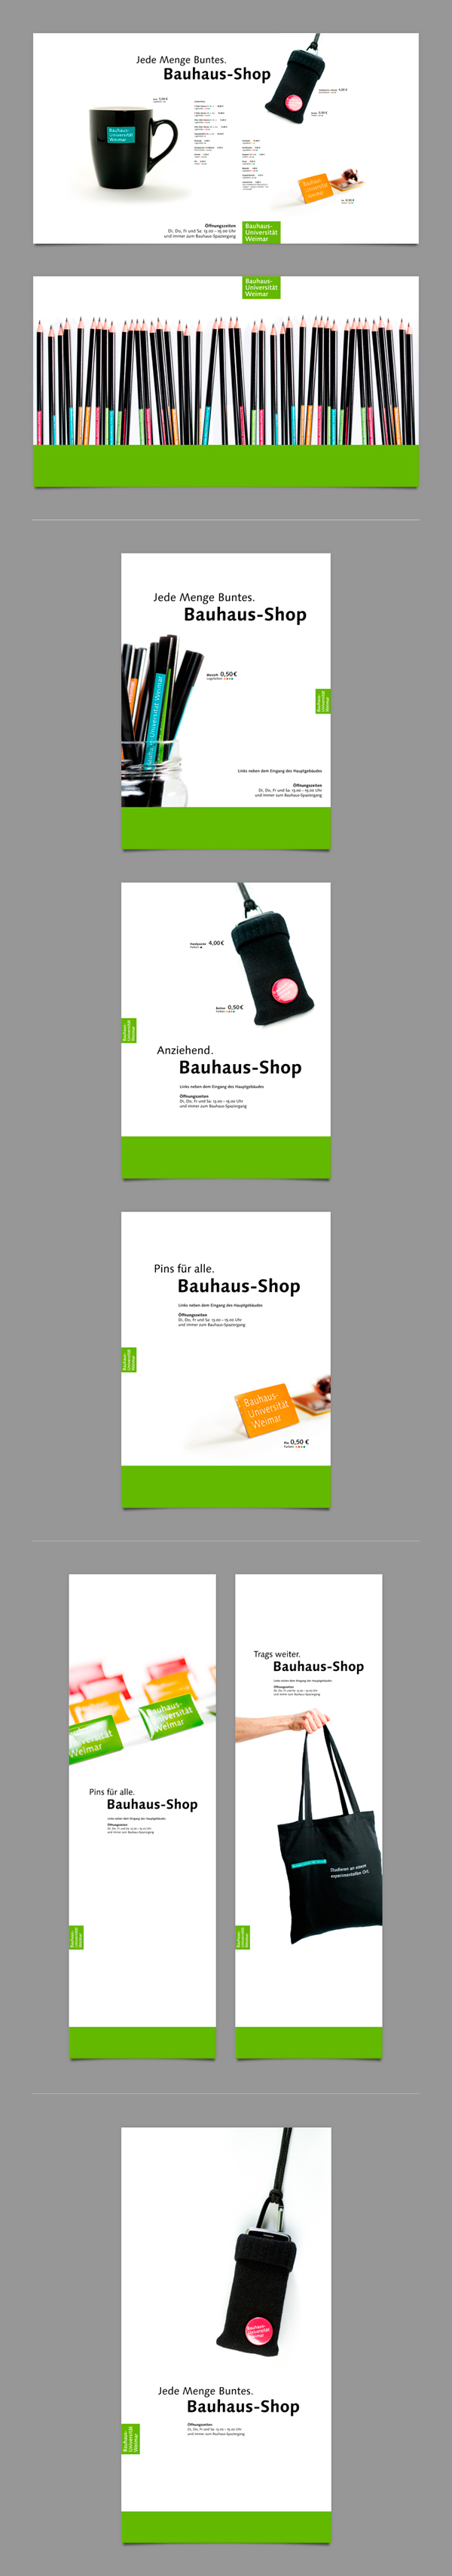 weimar bauhaus Kai Sinzinger shop Grafikdesign banner plakat Aufsteller Bauhaus-universität Weimar